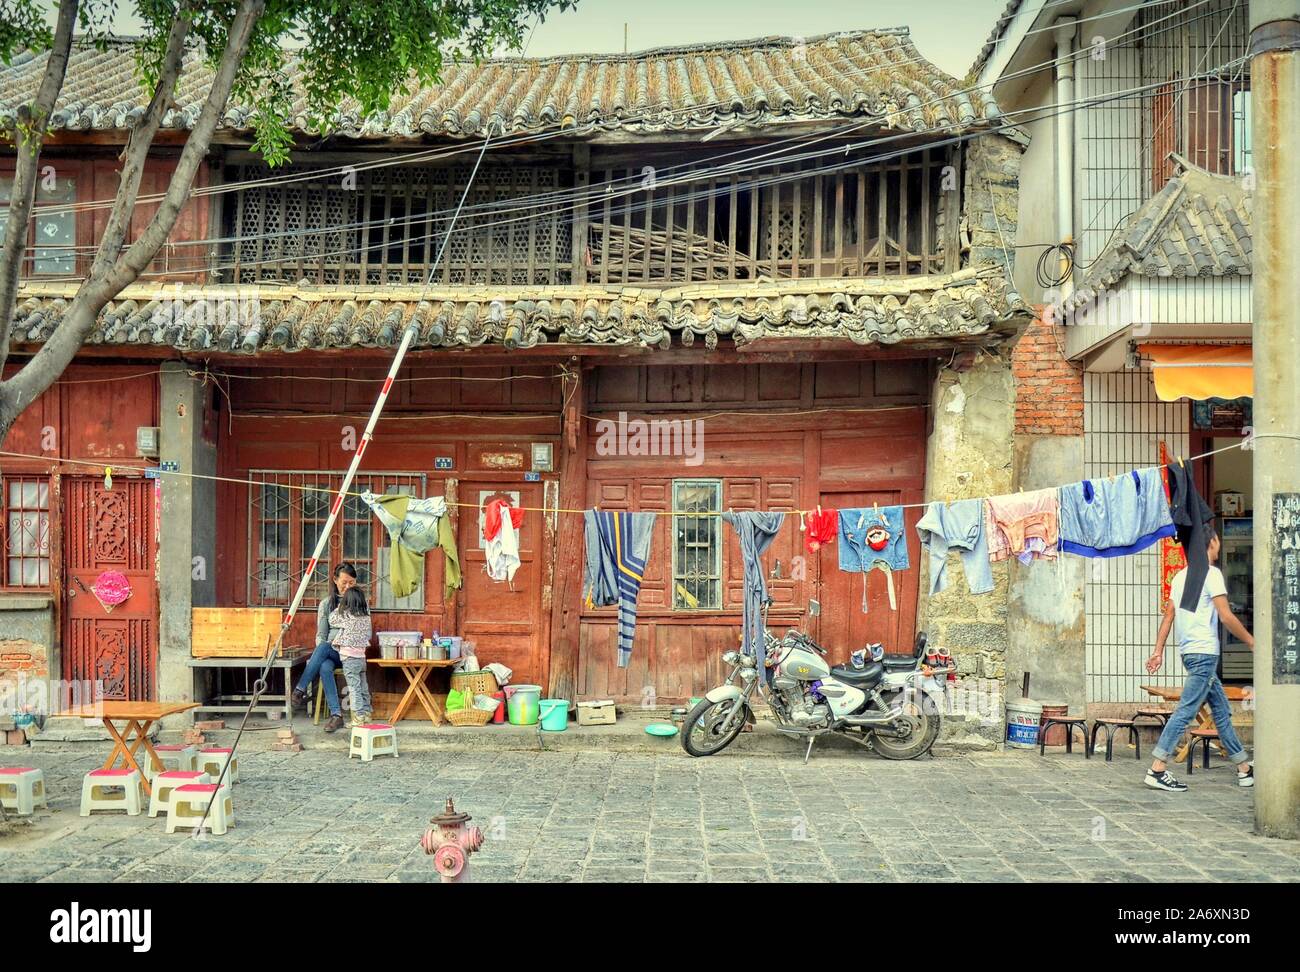 Vida callejera en la antigua ciudad de Dali, provincia de Yunnan, China. Foto de stock